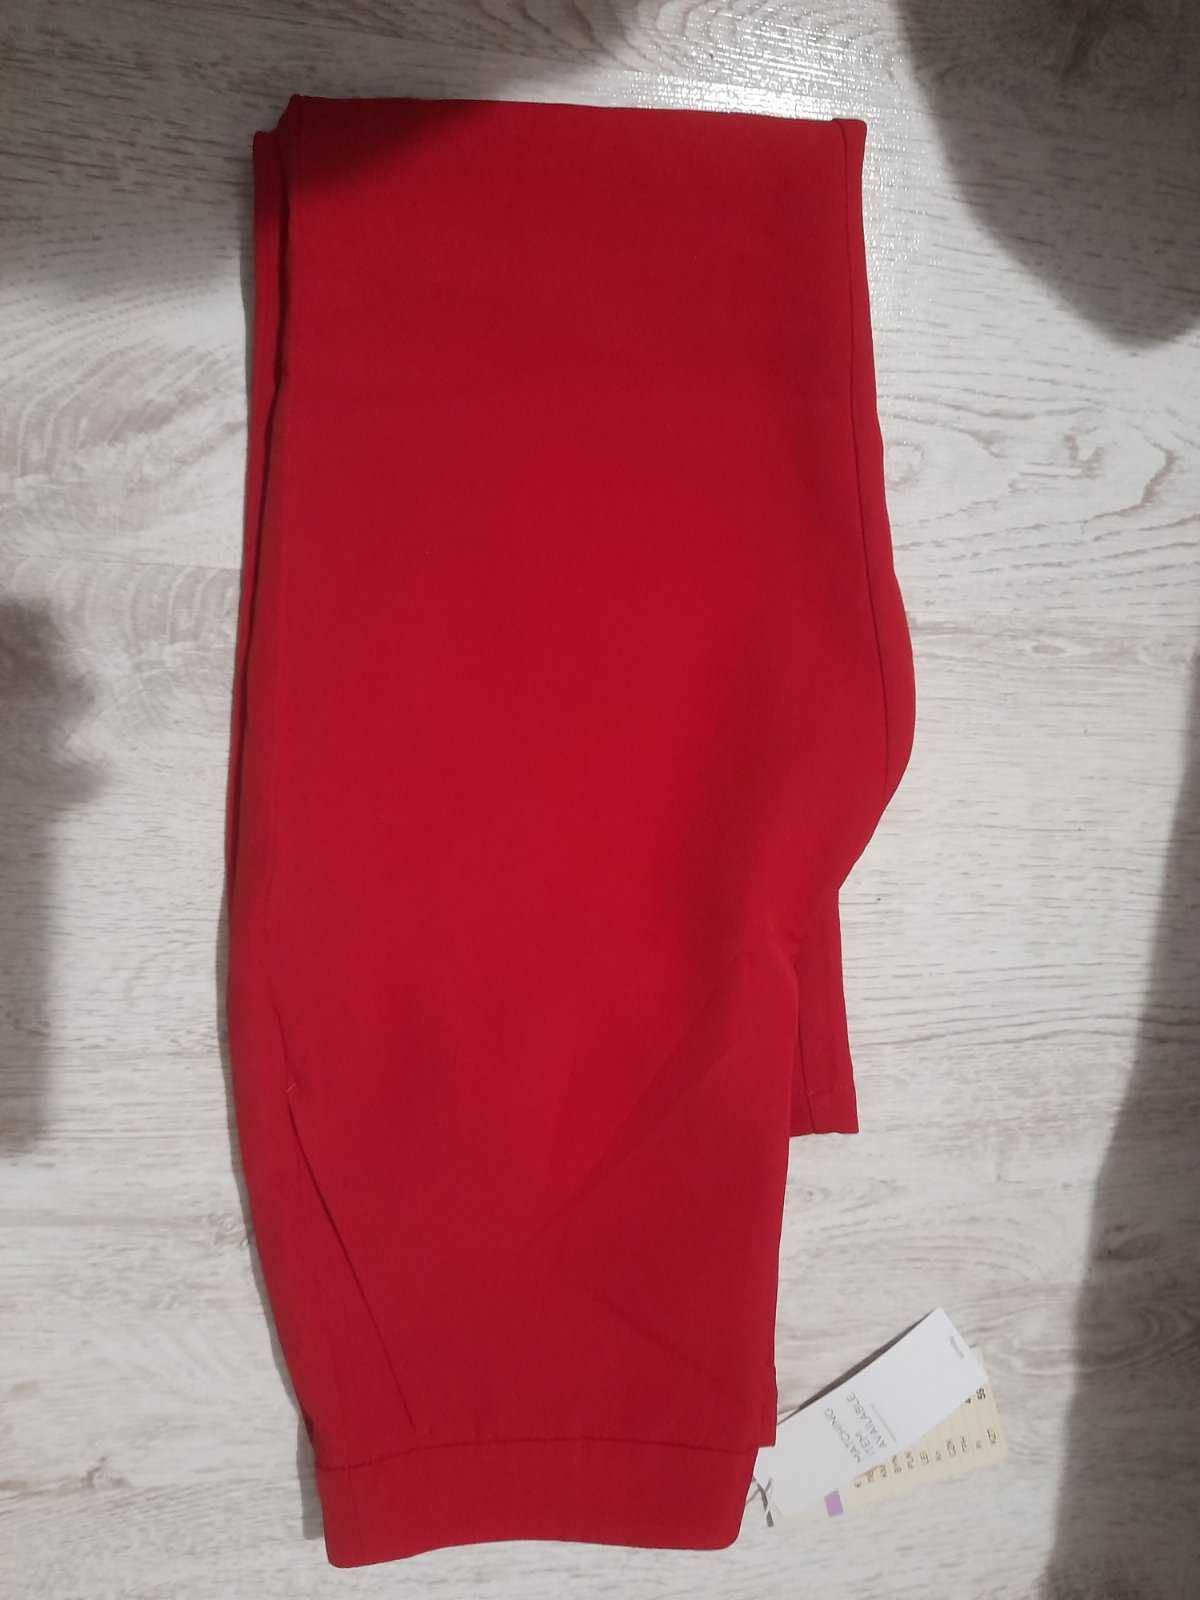 Панталон дамски червен